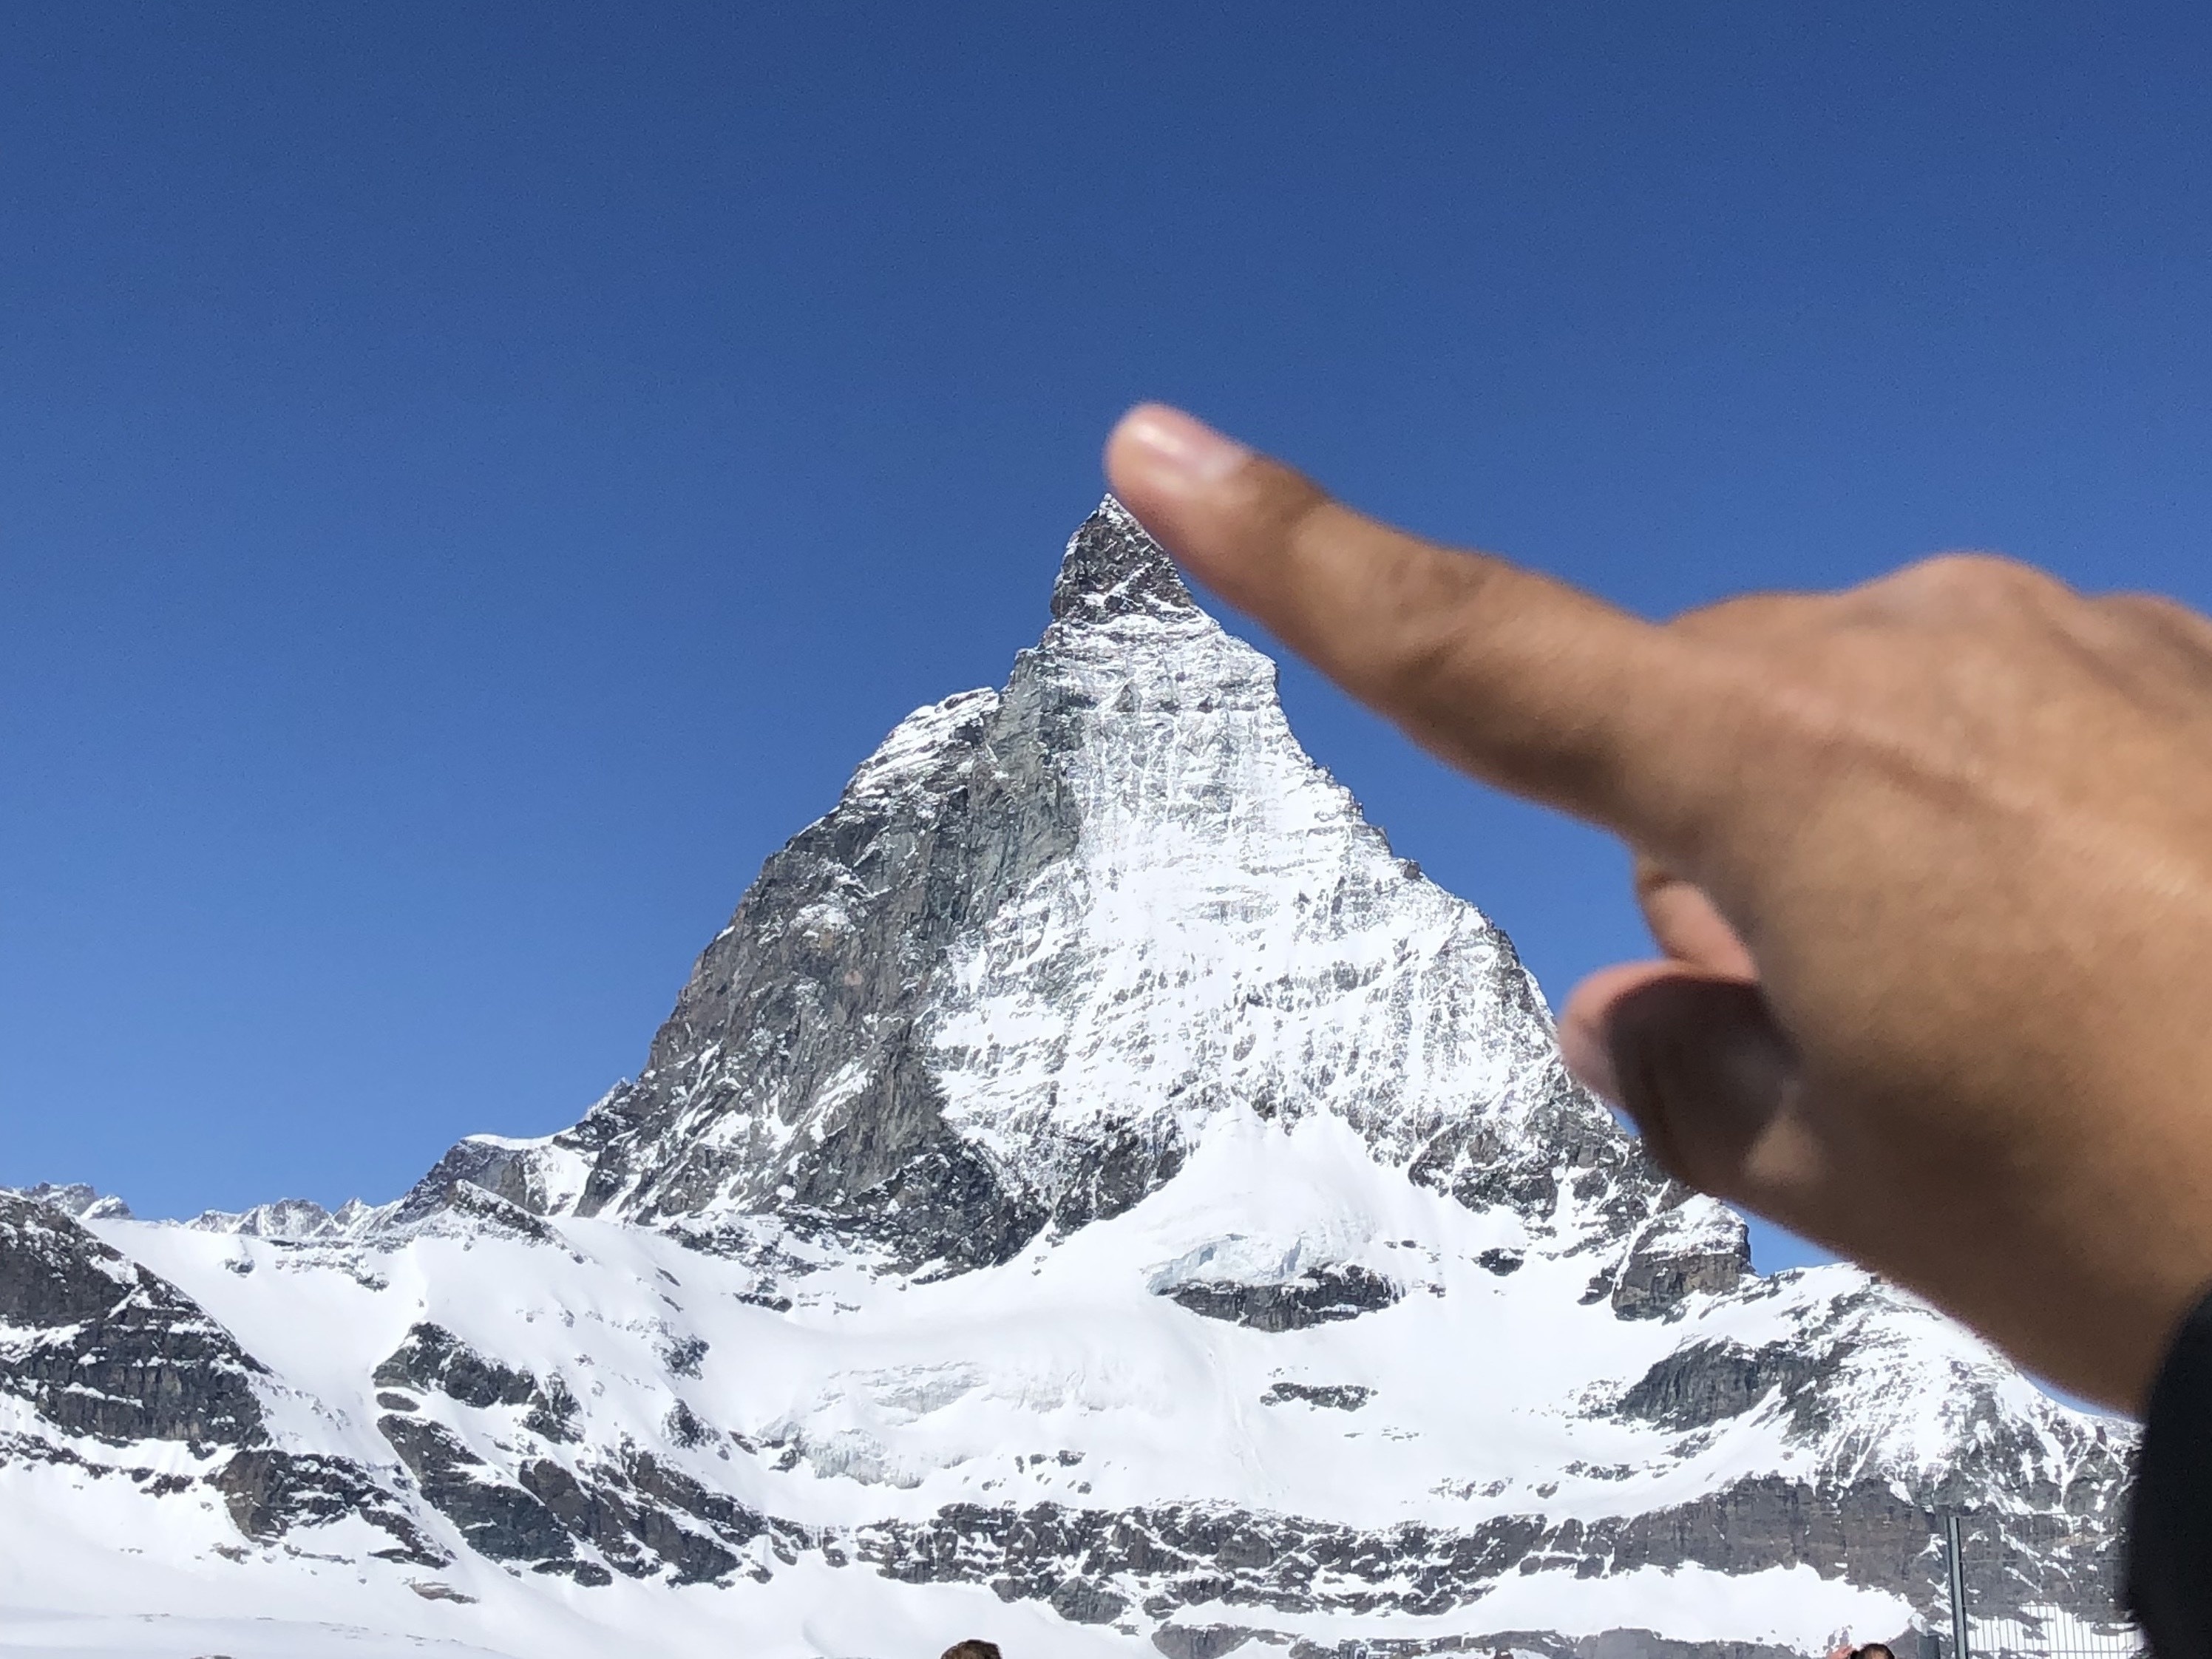 #Contest #Matterhorn#Zermatt #ouch #Switzerland #Suisse#Schweiz #HeavenonEarth #Culture